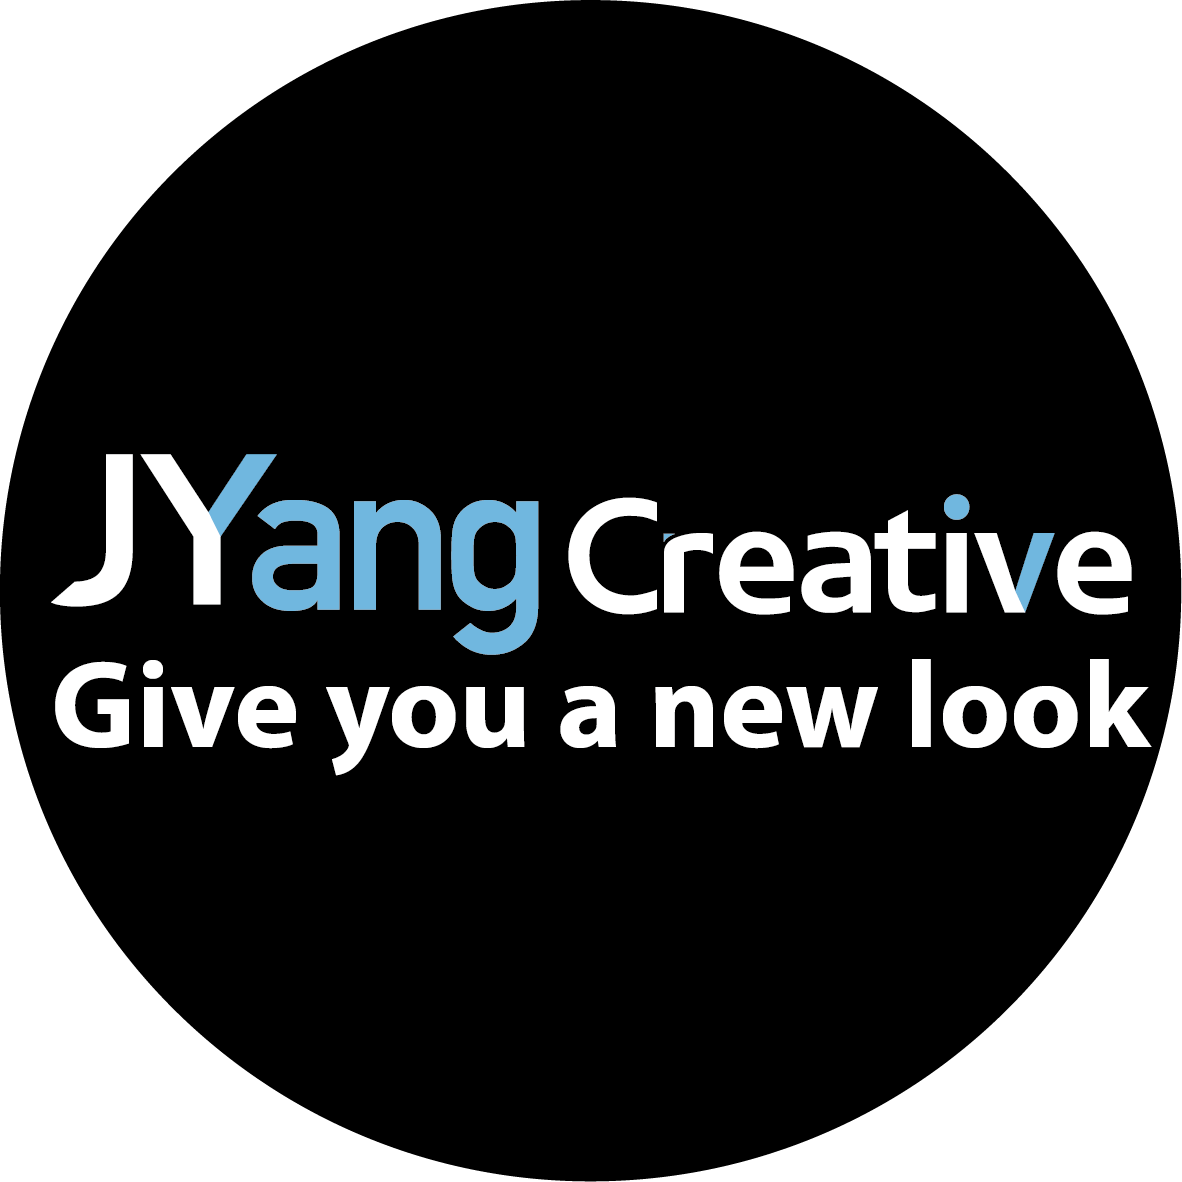 Juyang Creative 아바타